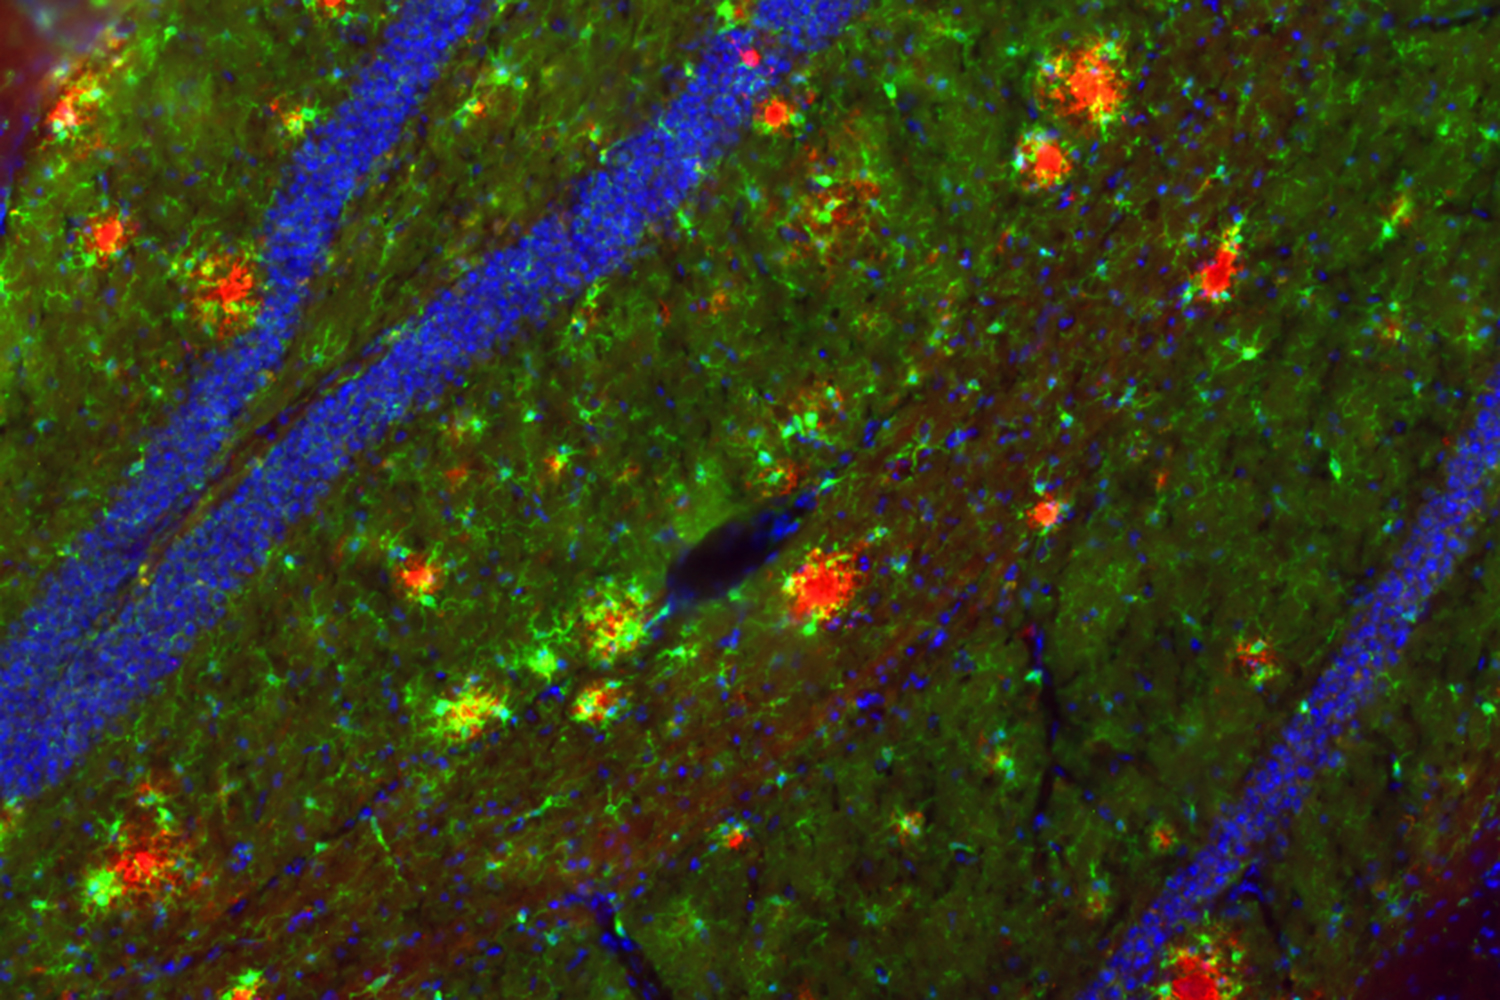 Die Abbildung zeigt eine mikroskopische Aufnahme des Maus-Hippocampus. In roter Farbe sind die A-beta-Ablagerungen sichtbar gemacht worden. Um diese Alzheimer-typischen Ablagerungen in der Maus untersuchen zu können, sind spezielle Mausmodelle notwendig, die auch von der AG Korte im Rahmen dieser Studie verwendet wurden. Bildnachweis: Holz, Korte/TU Braunschweig